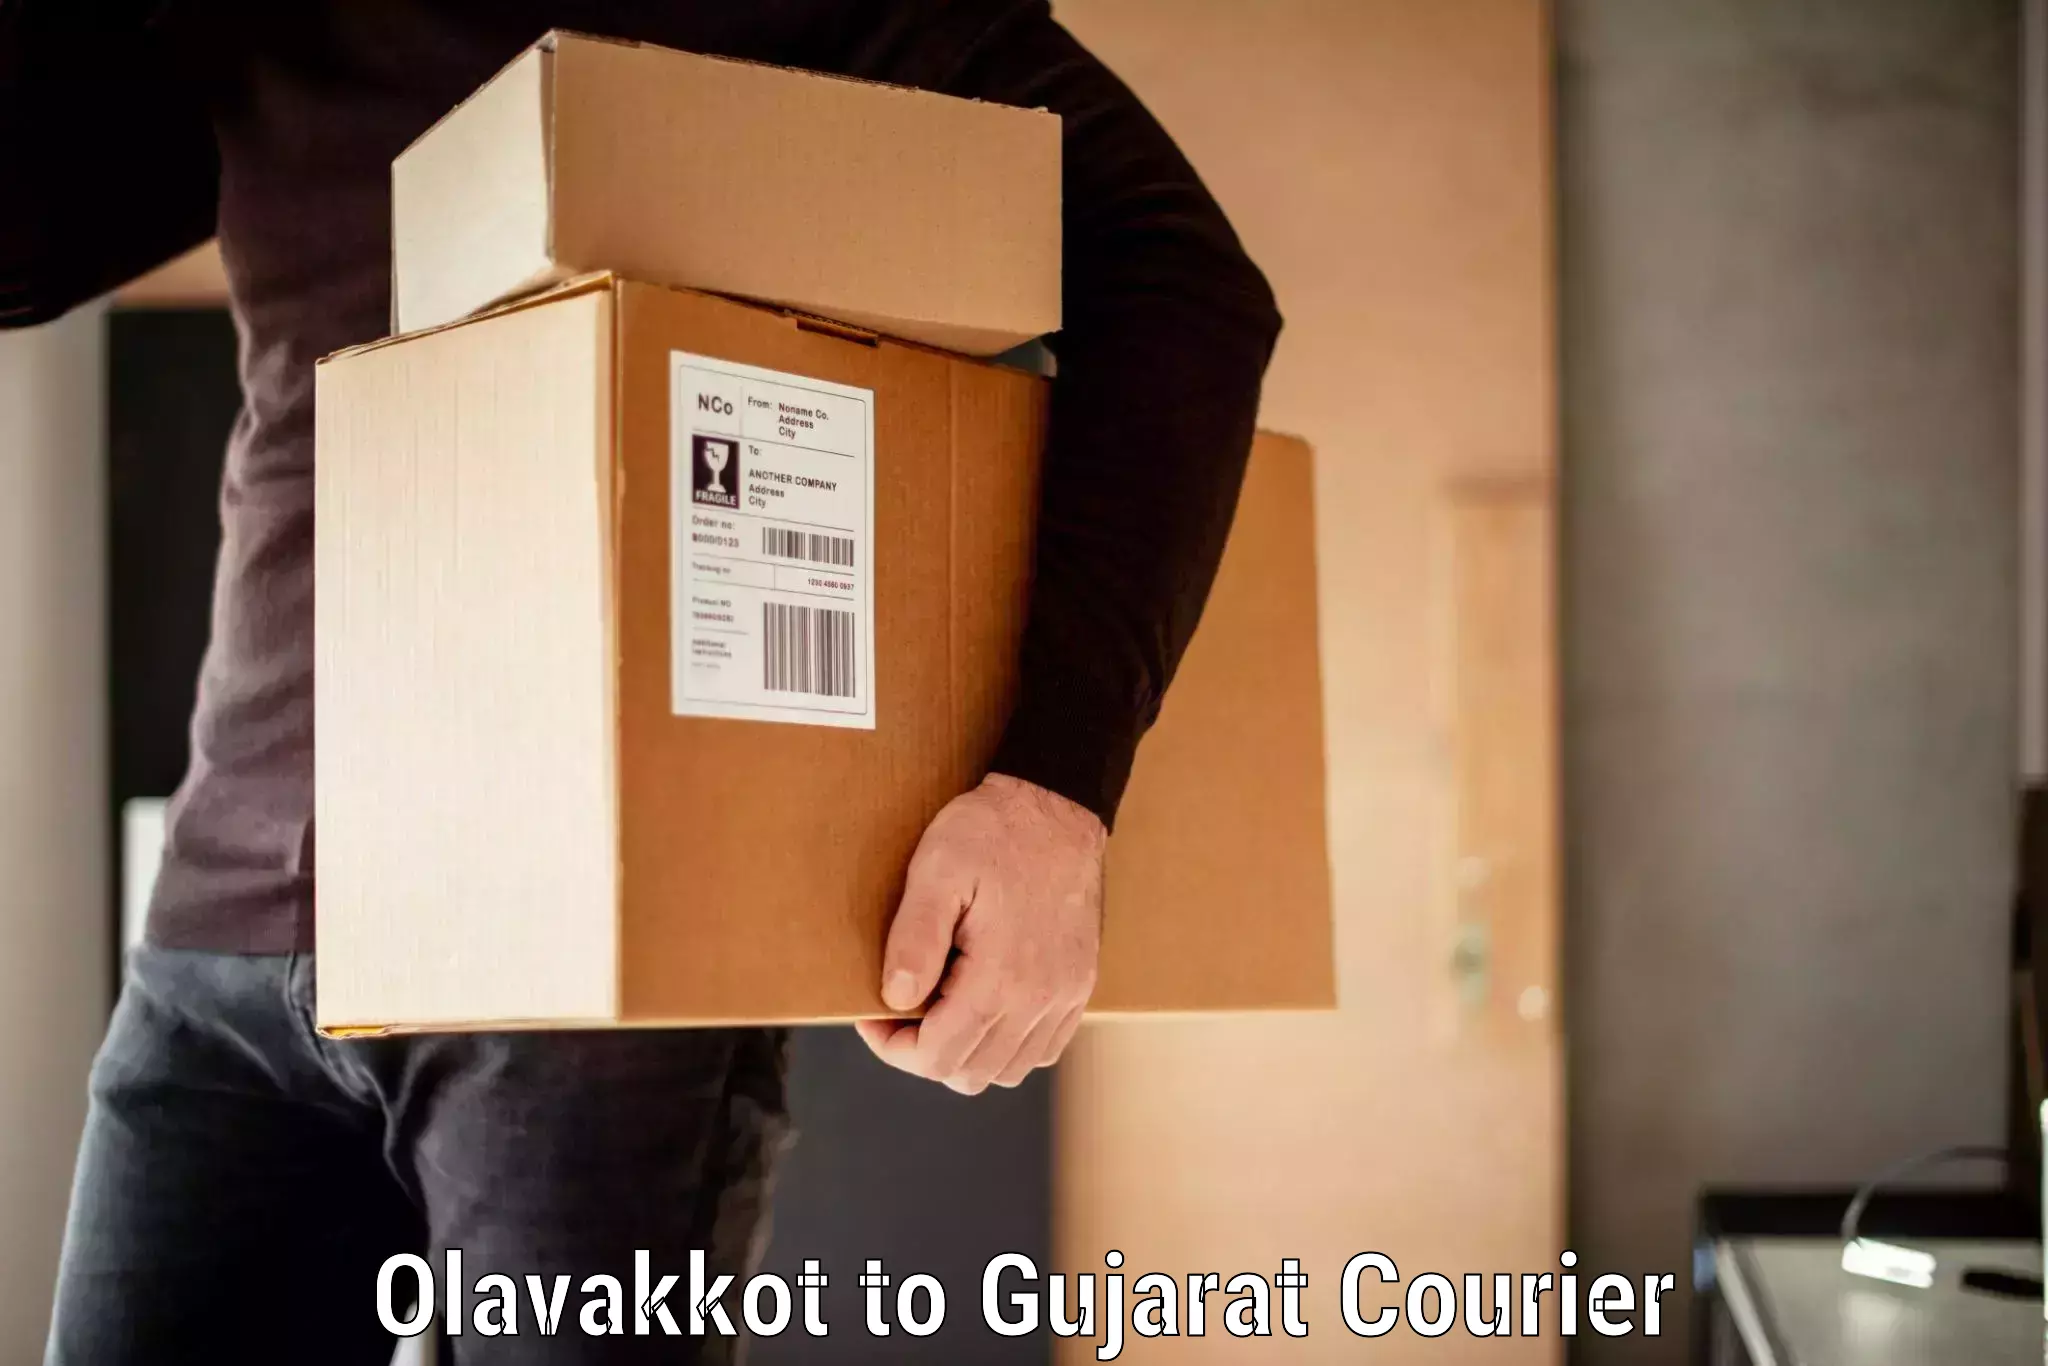 Baggage transport scheduler Olavakkot to Rajula